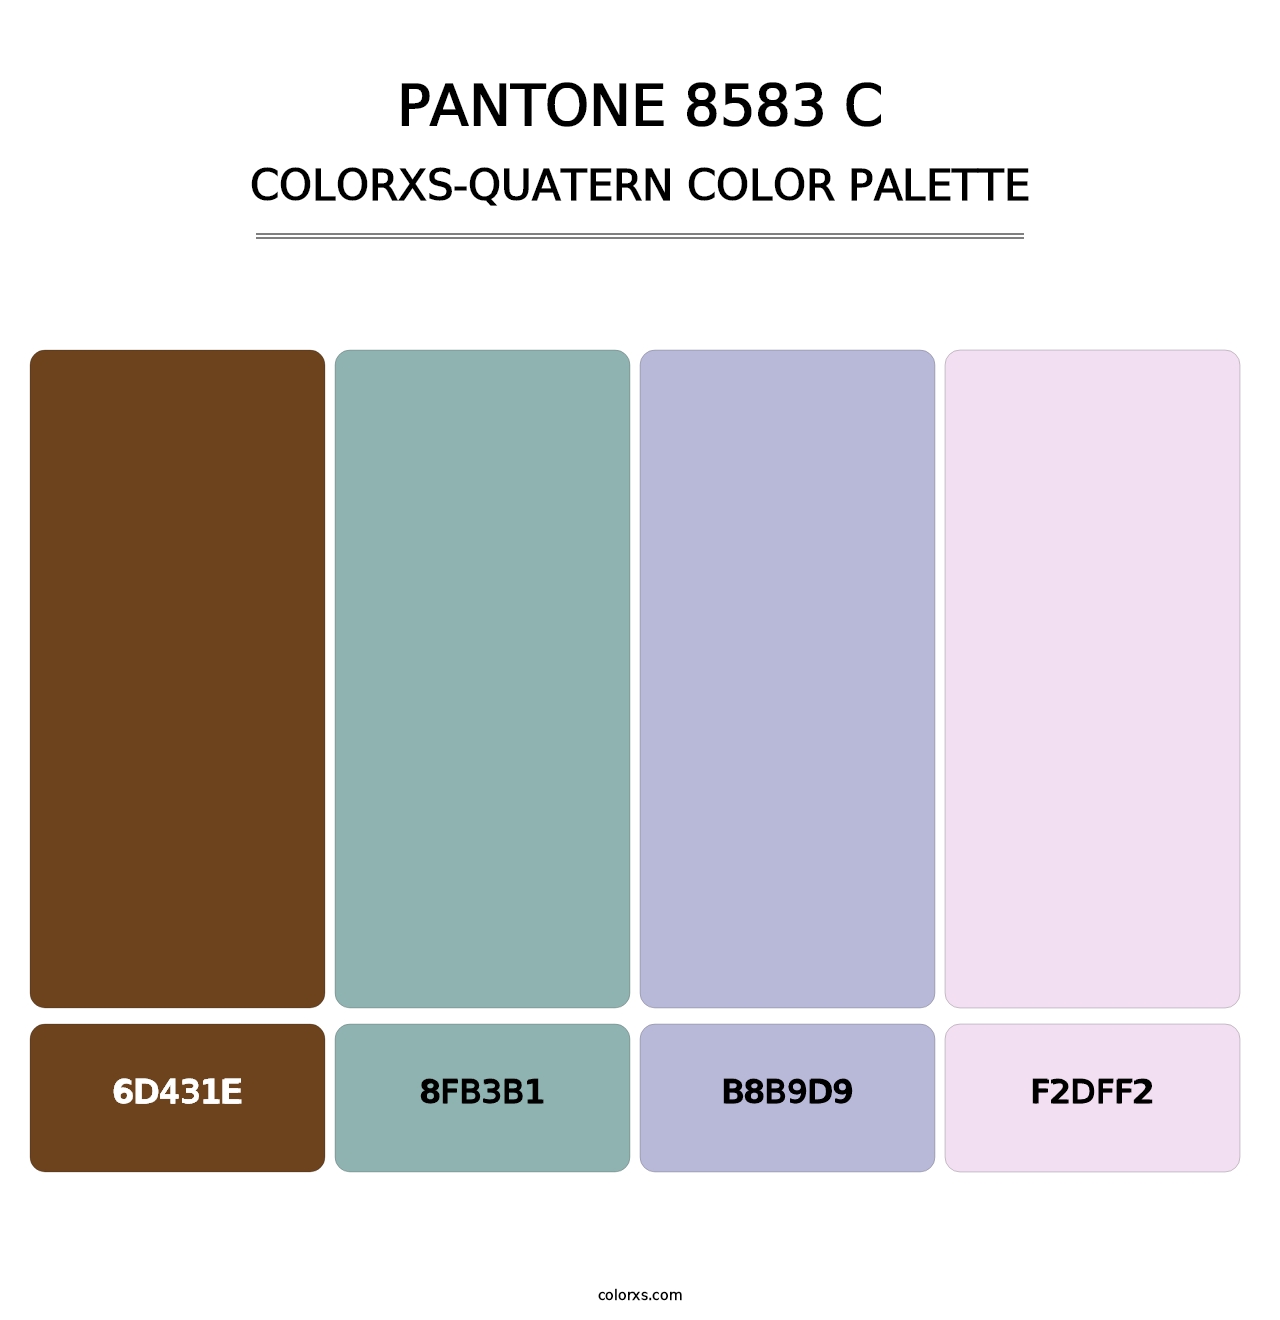 PANTONE 8583 C - Colorxs Quatern Palette